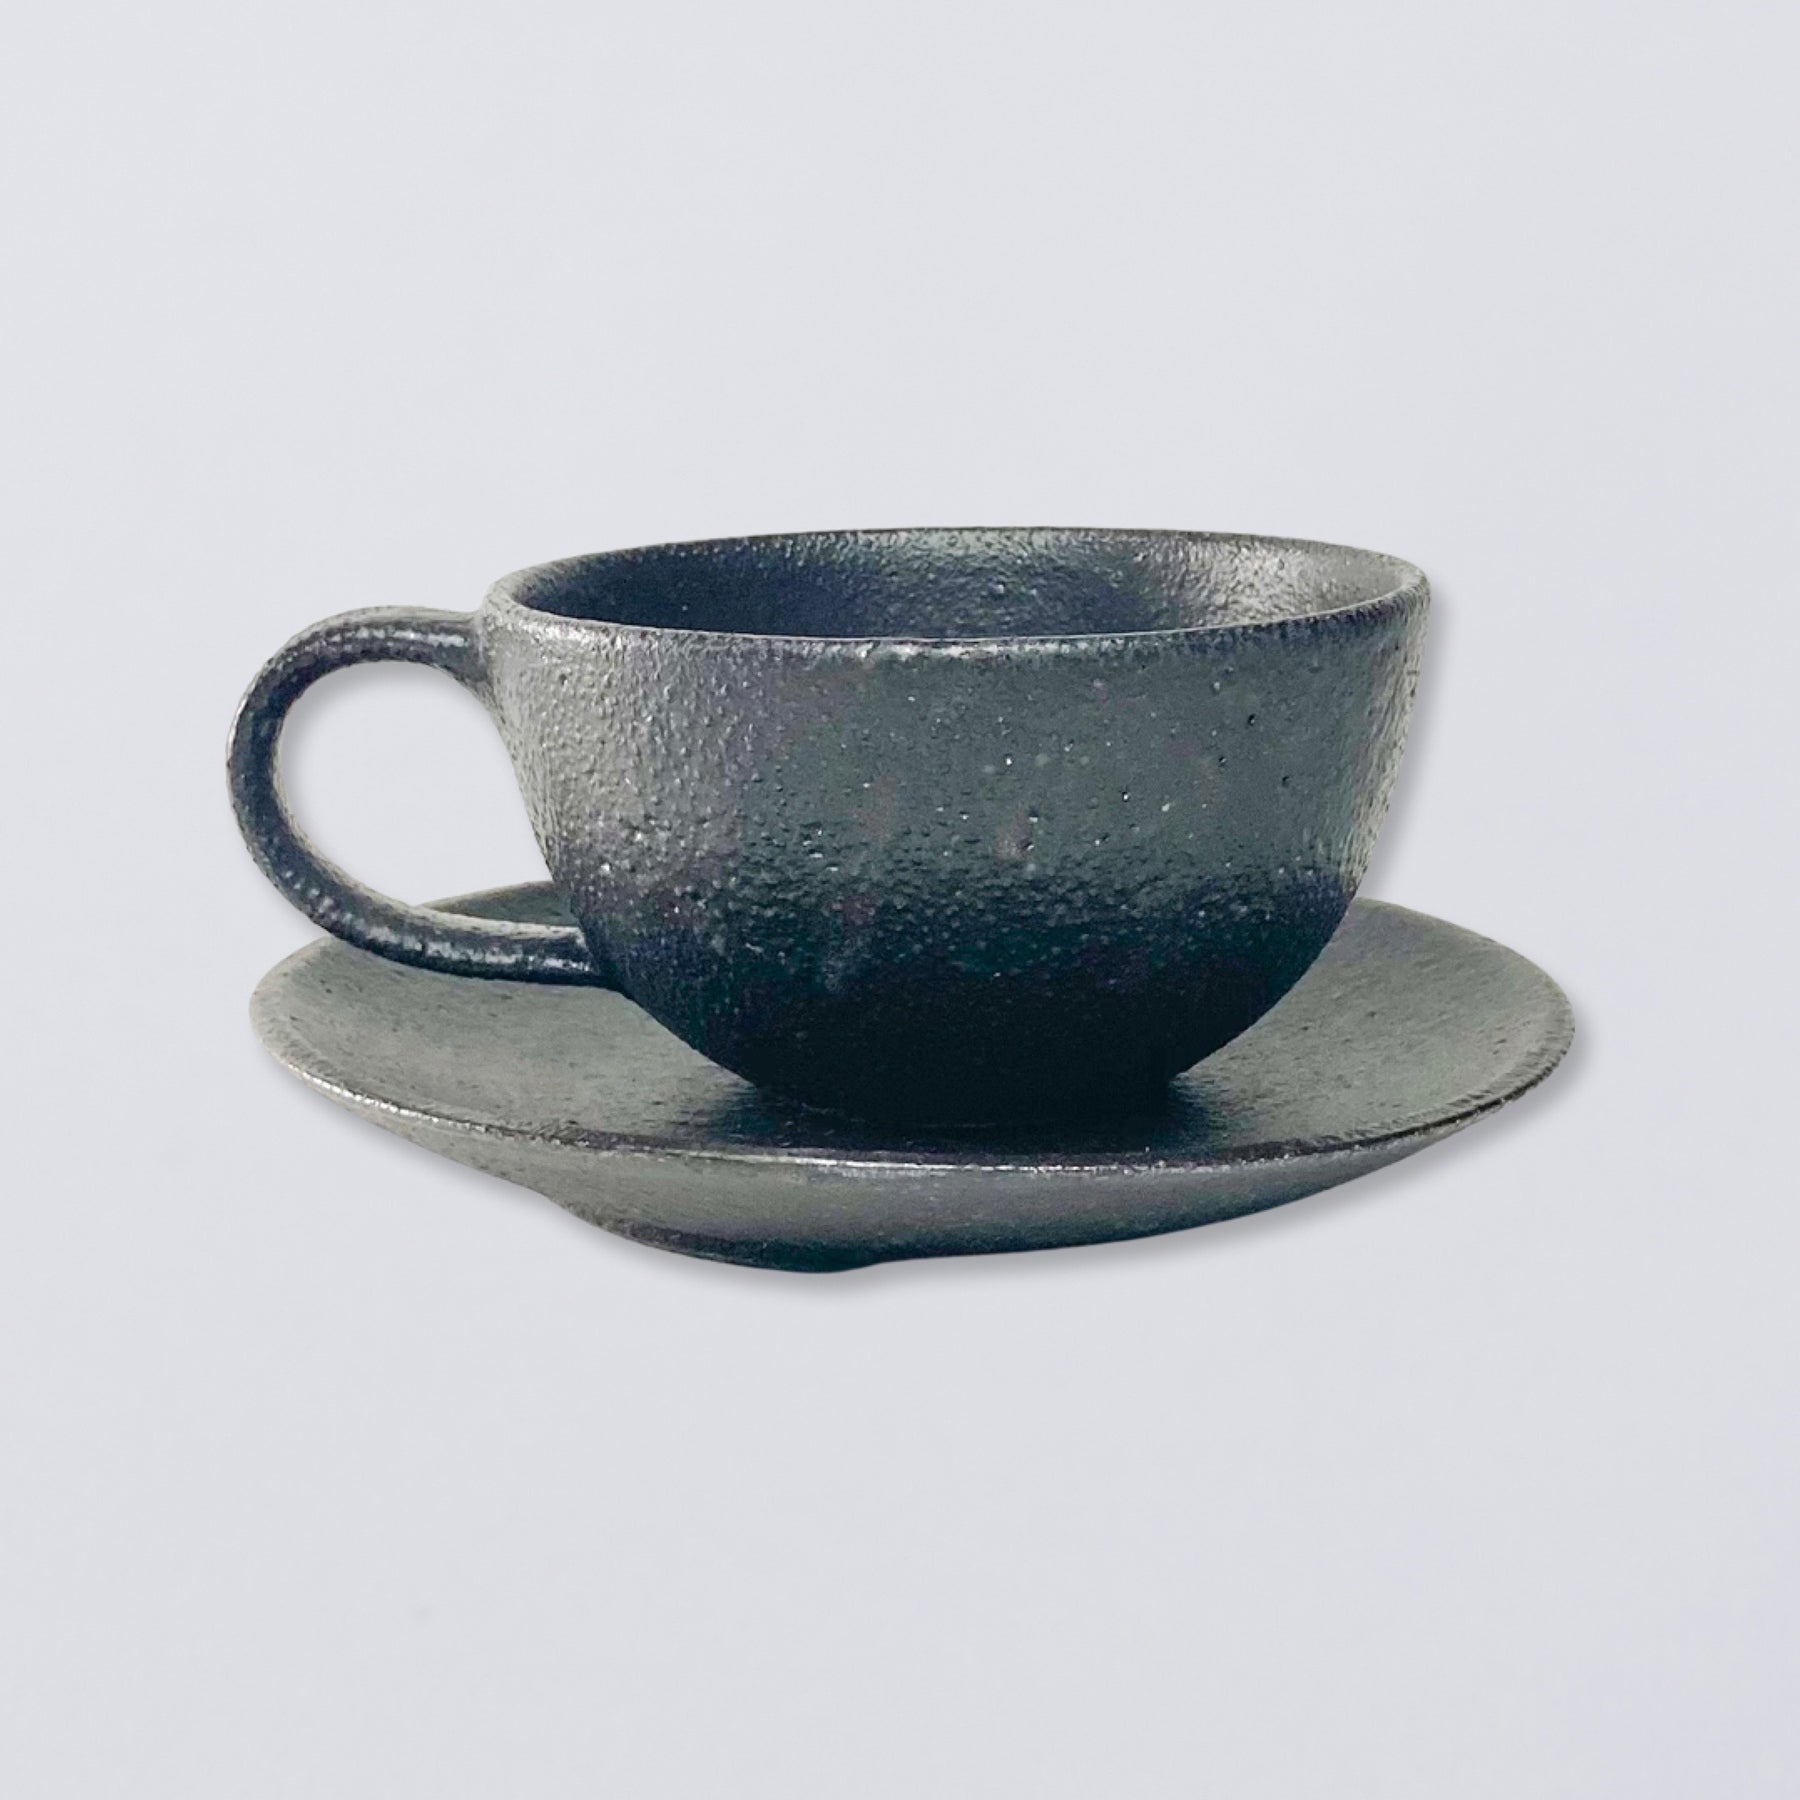 ソーサー / kousha ceramic works